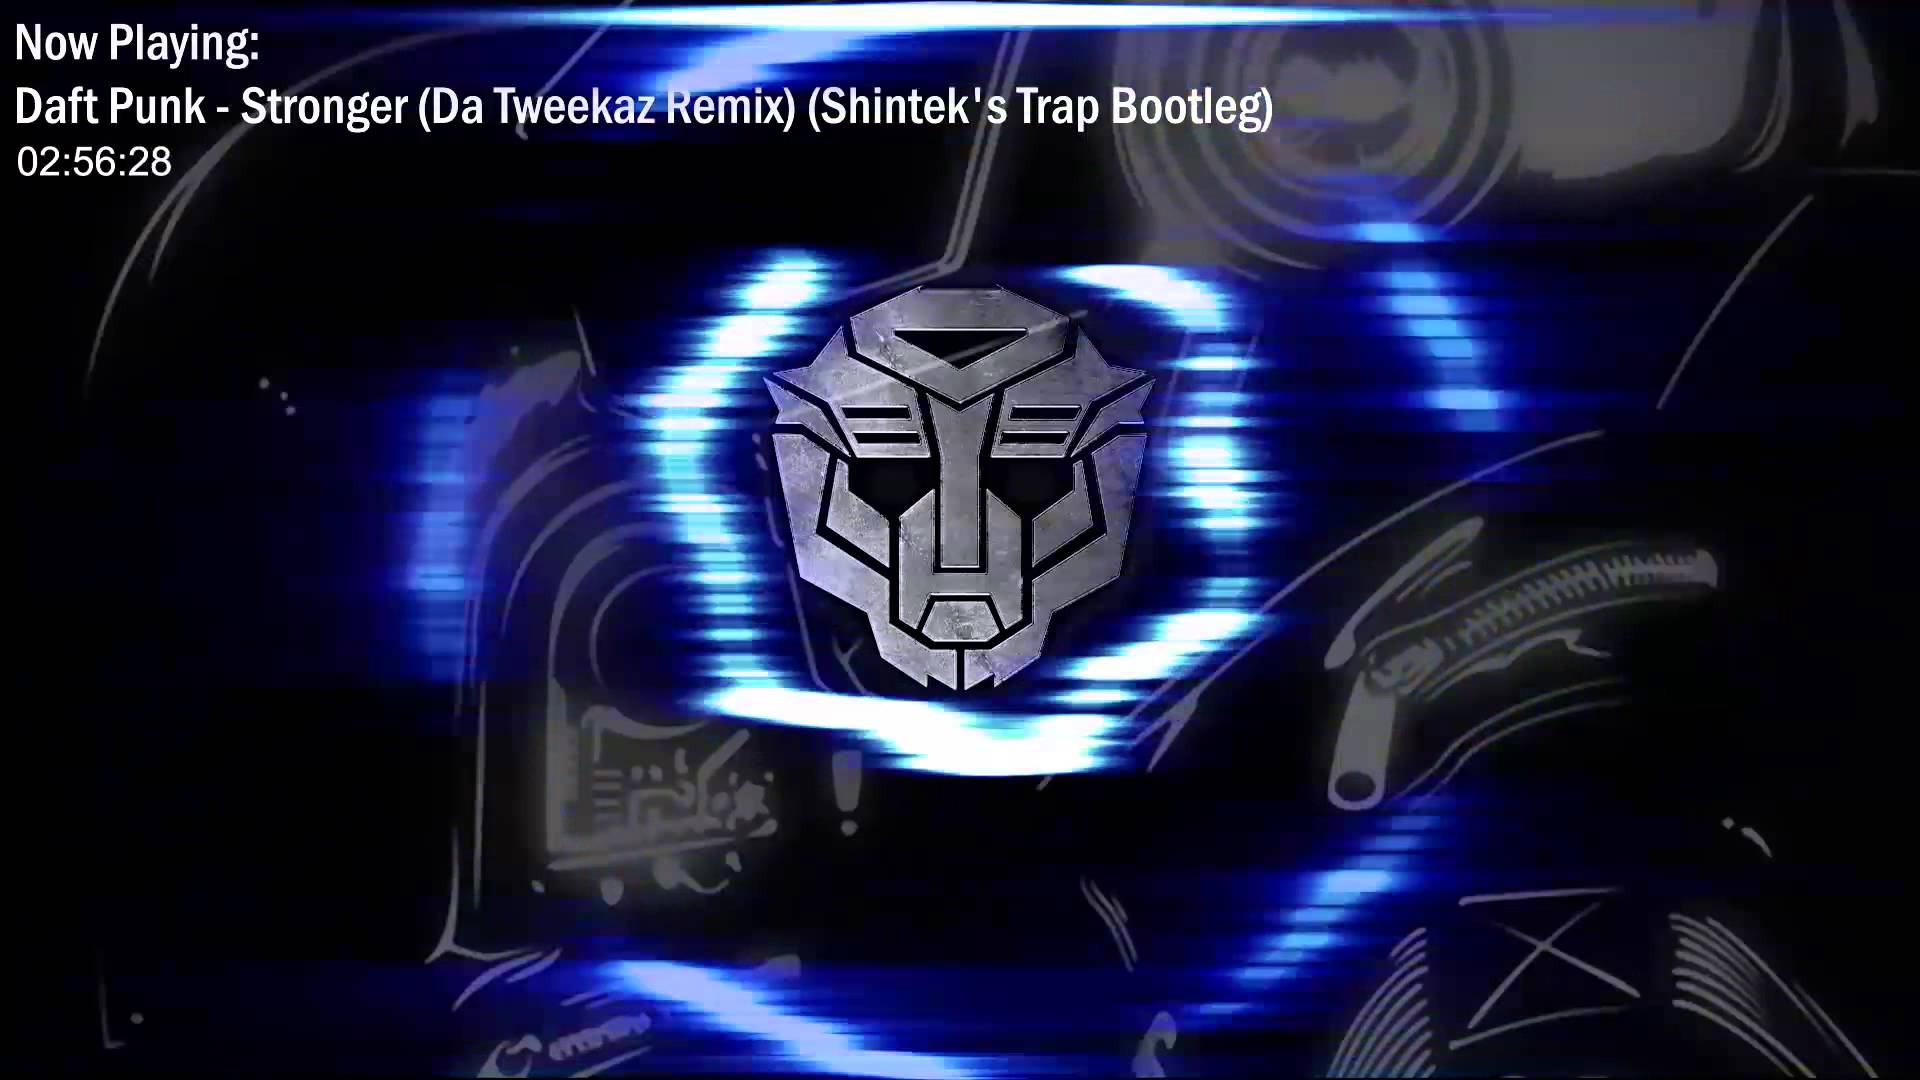 Daft Punk - Stronger (Da Tweekaz Remix) [Shintek's Trap Bootleg]